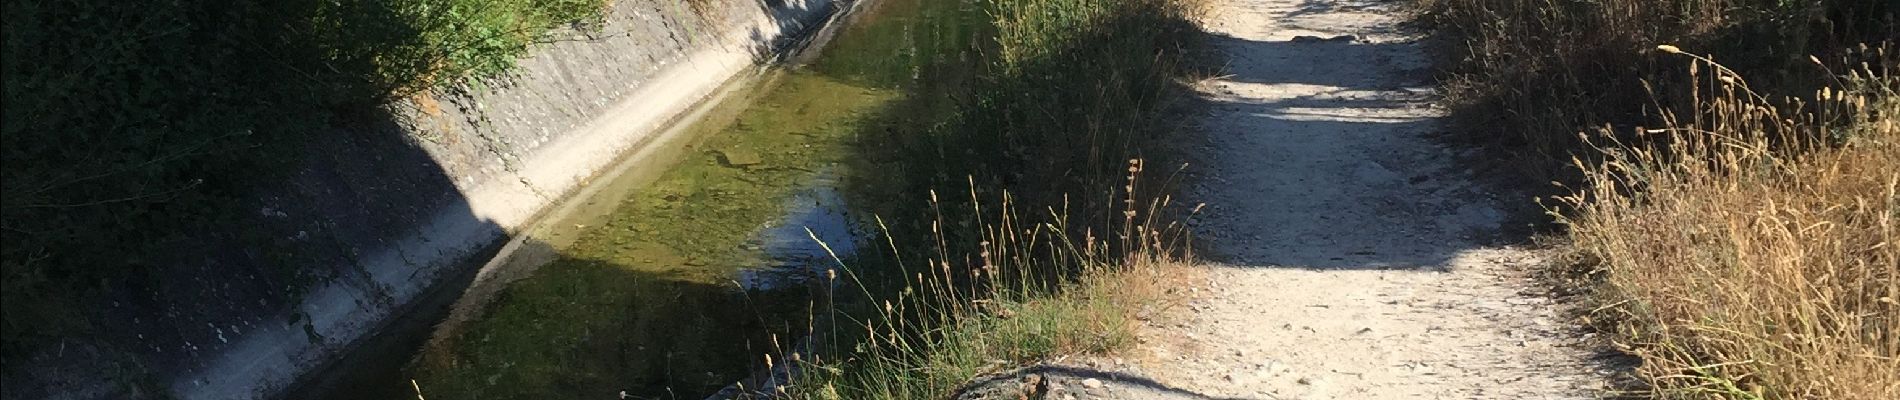 Trail Walking Mouans-Sartoux - Canal siagne juillet 2019 - Photo